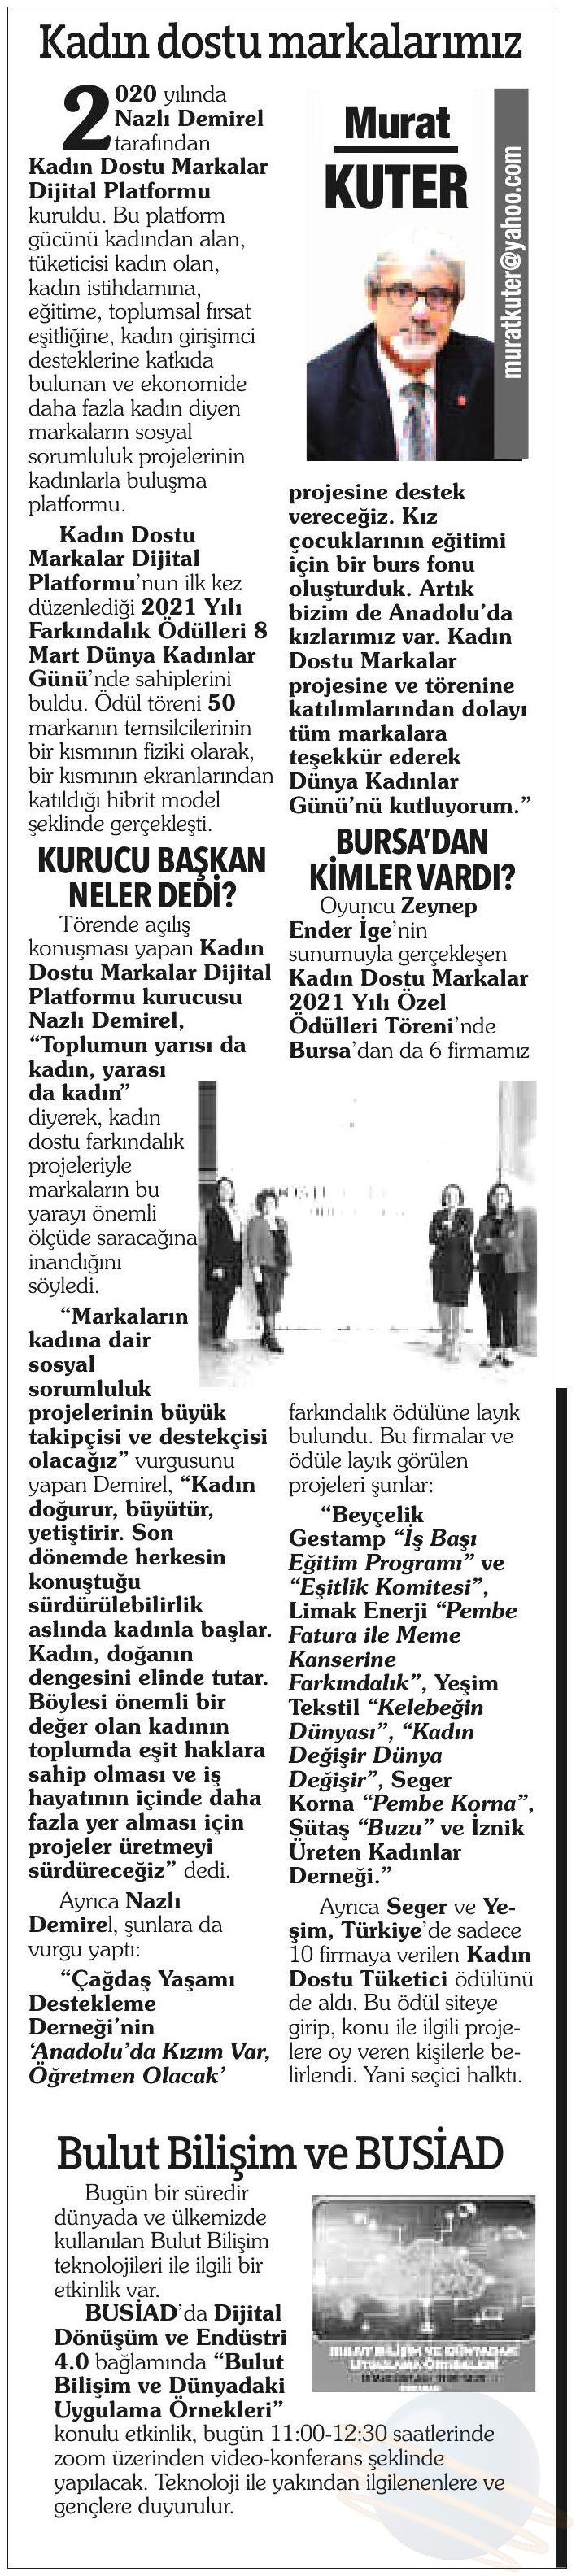 Kadın Dostu Markalarımız - Bursa Hakimiyet - 16.03.2021